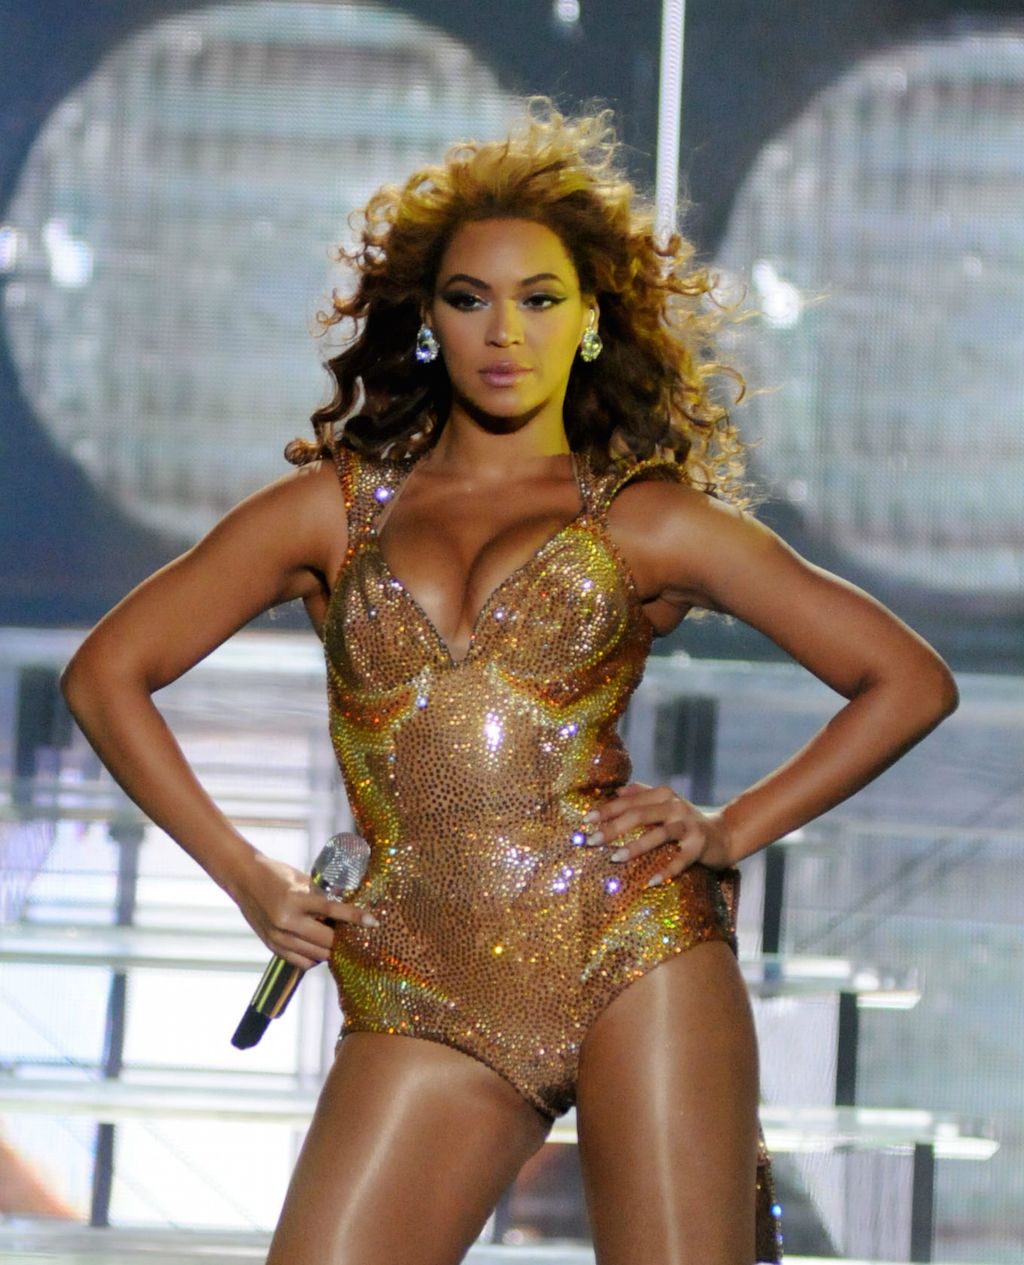 Beyonce power pose wonder woman pose